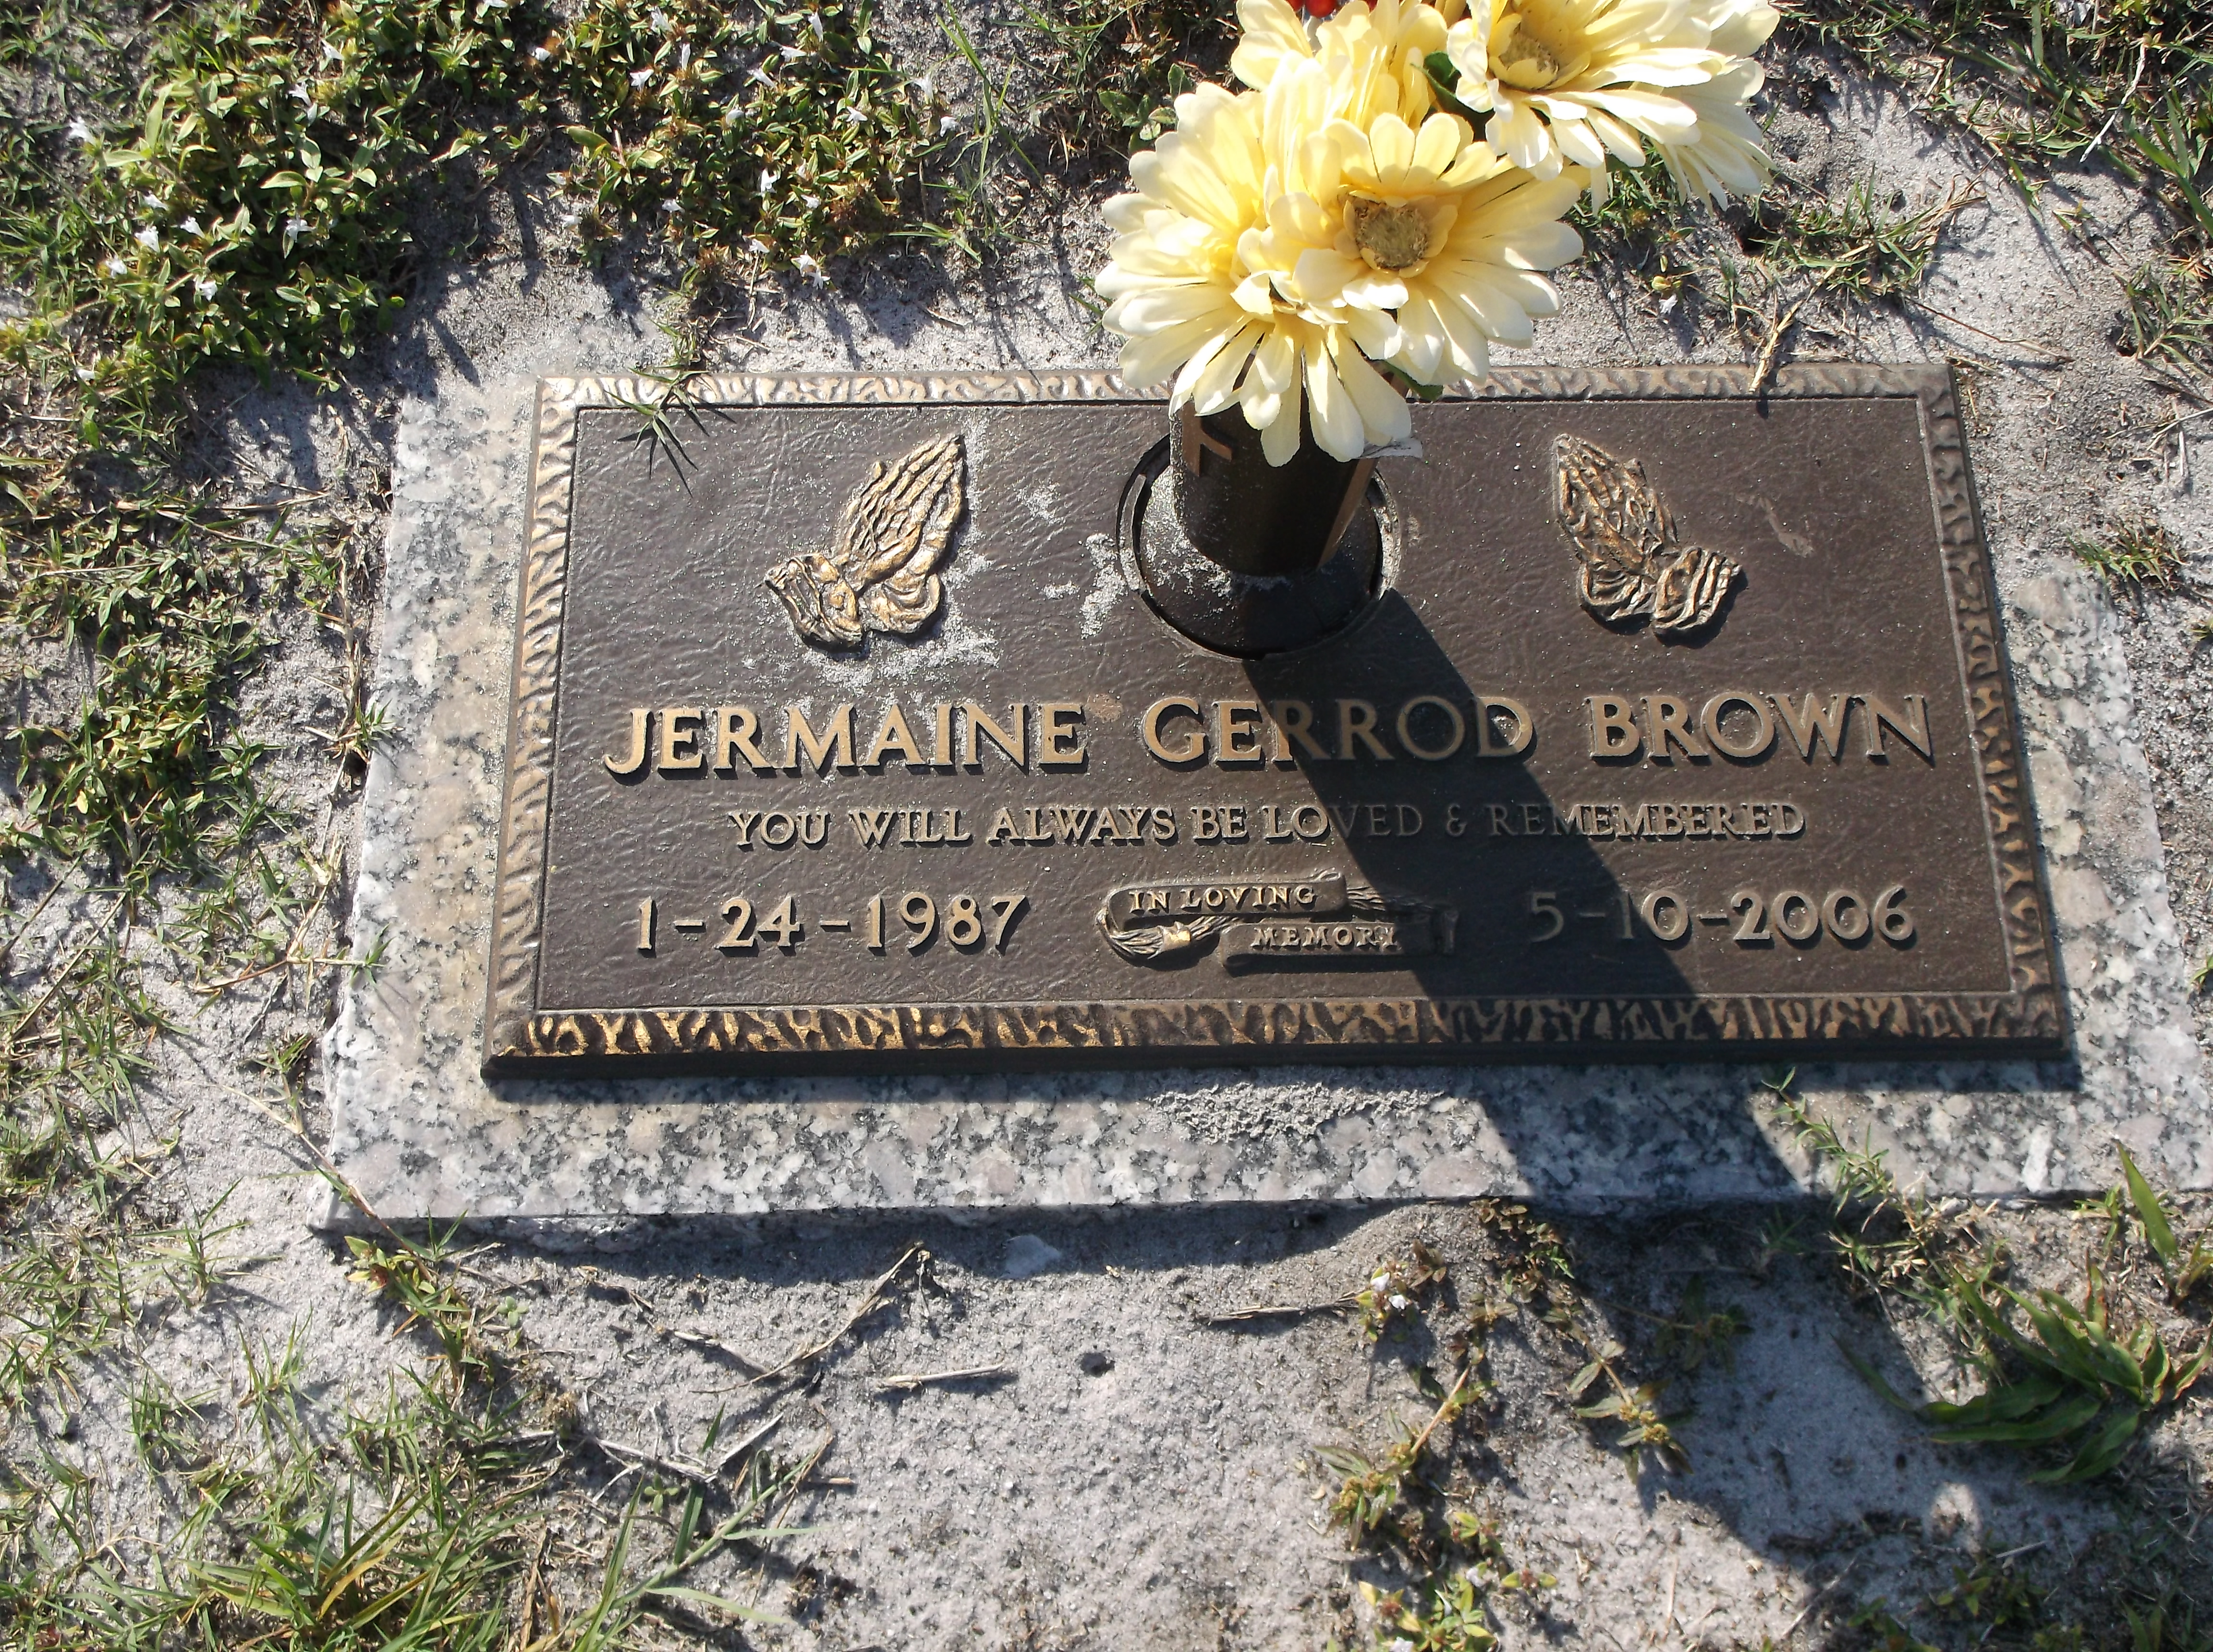 Jermaine Gerrod Brown